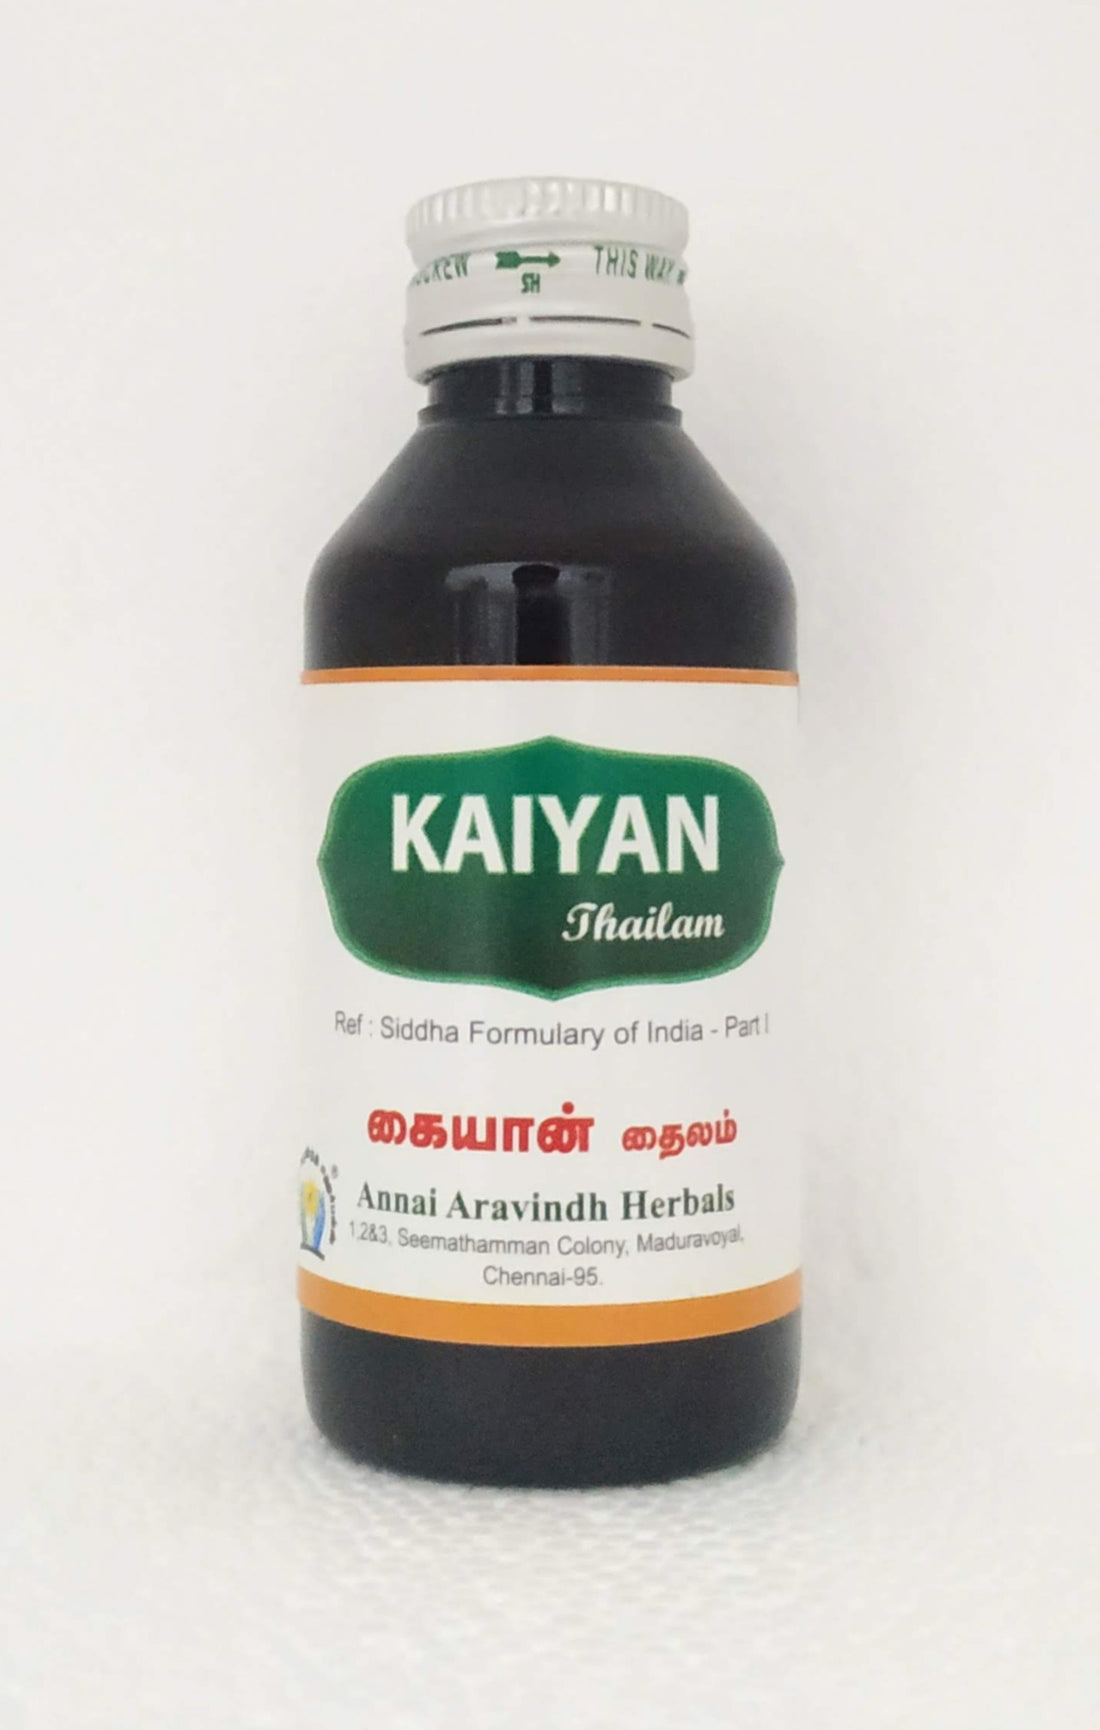 Shop Kaiyan thailam 100ml at price 95.00 from Annai Aravindh Online - Ayush Care